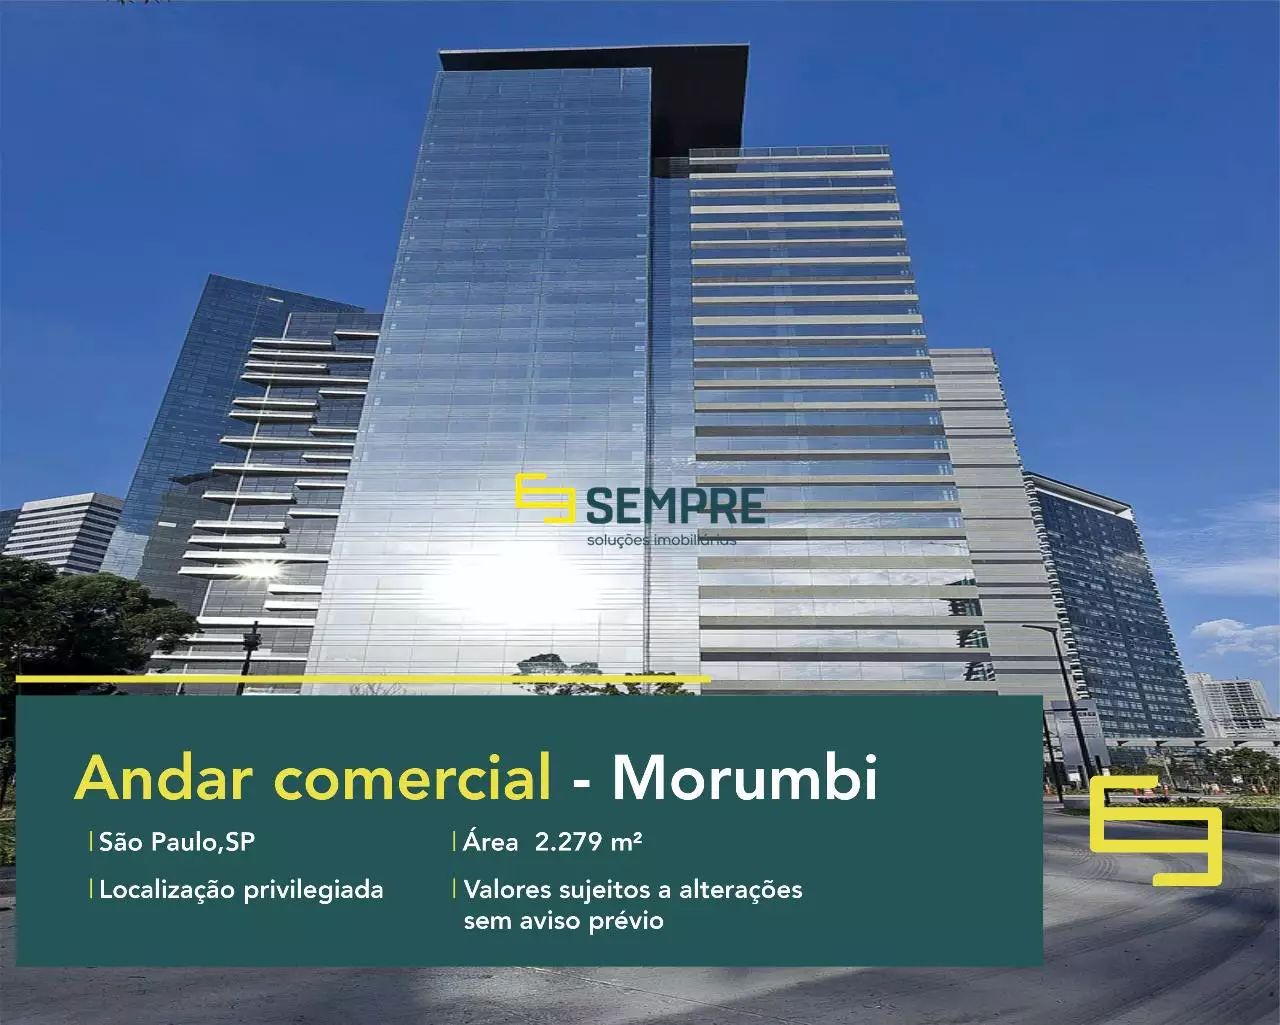 Andar comercial no Morumbi para alugar em São Paulo, excelente localização. O estabelecimento comercial conta com área de 2.279 m².